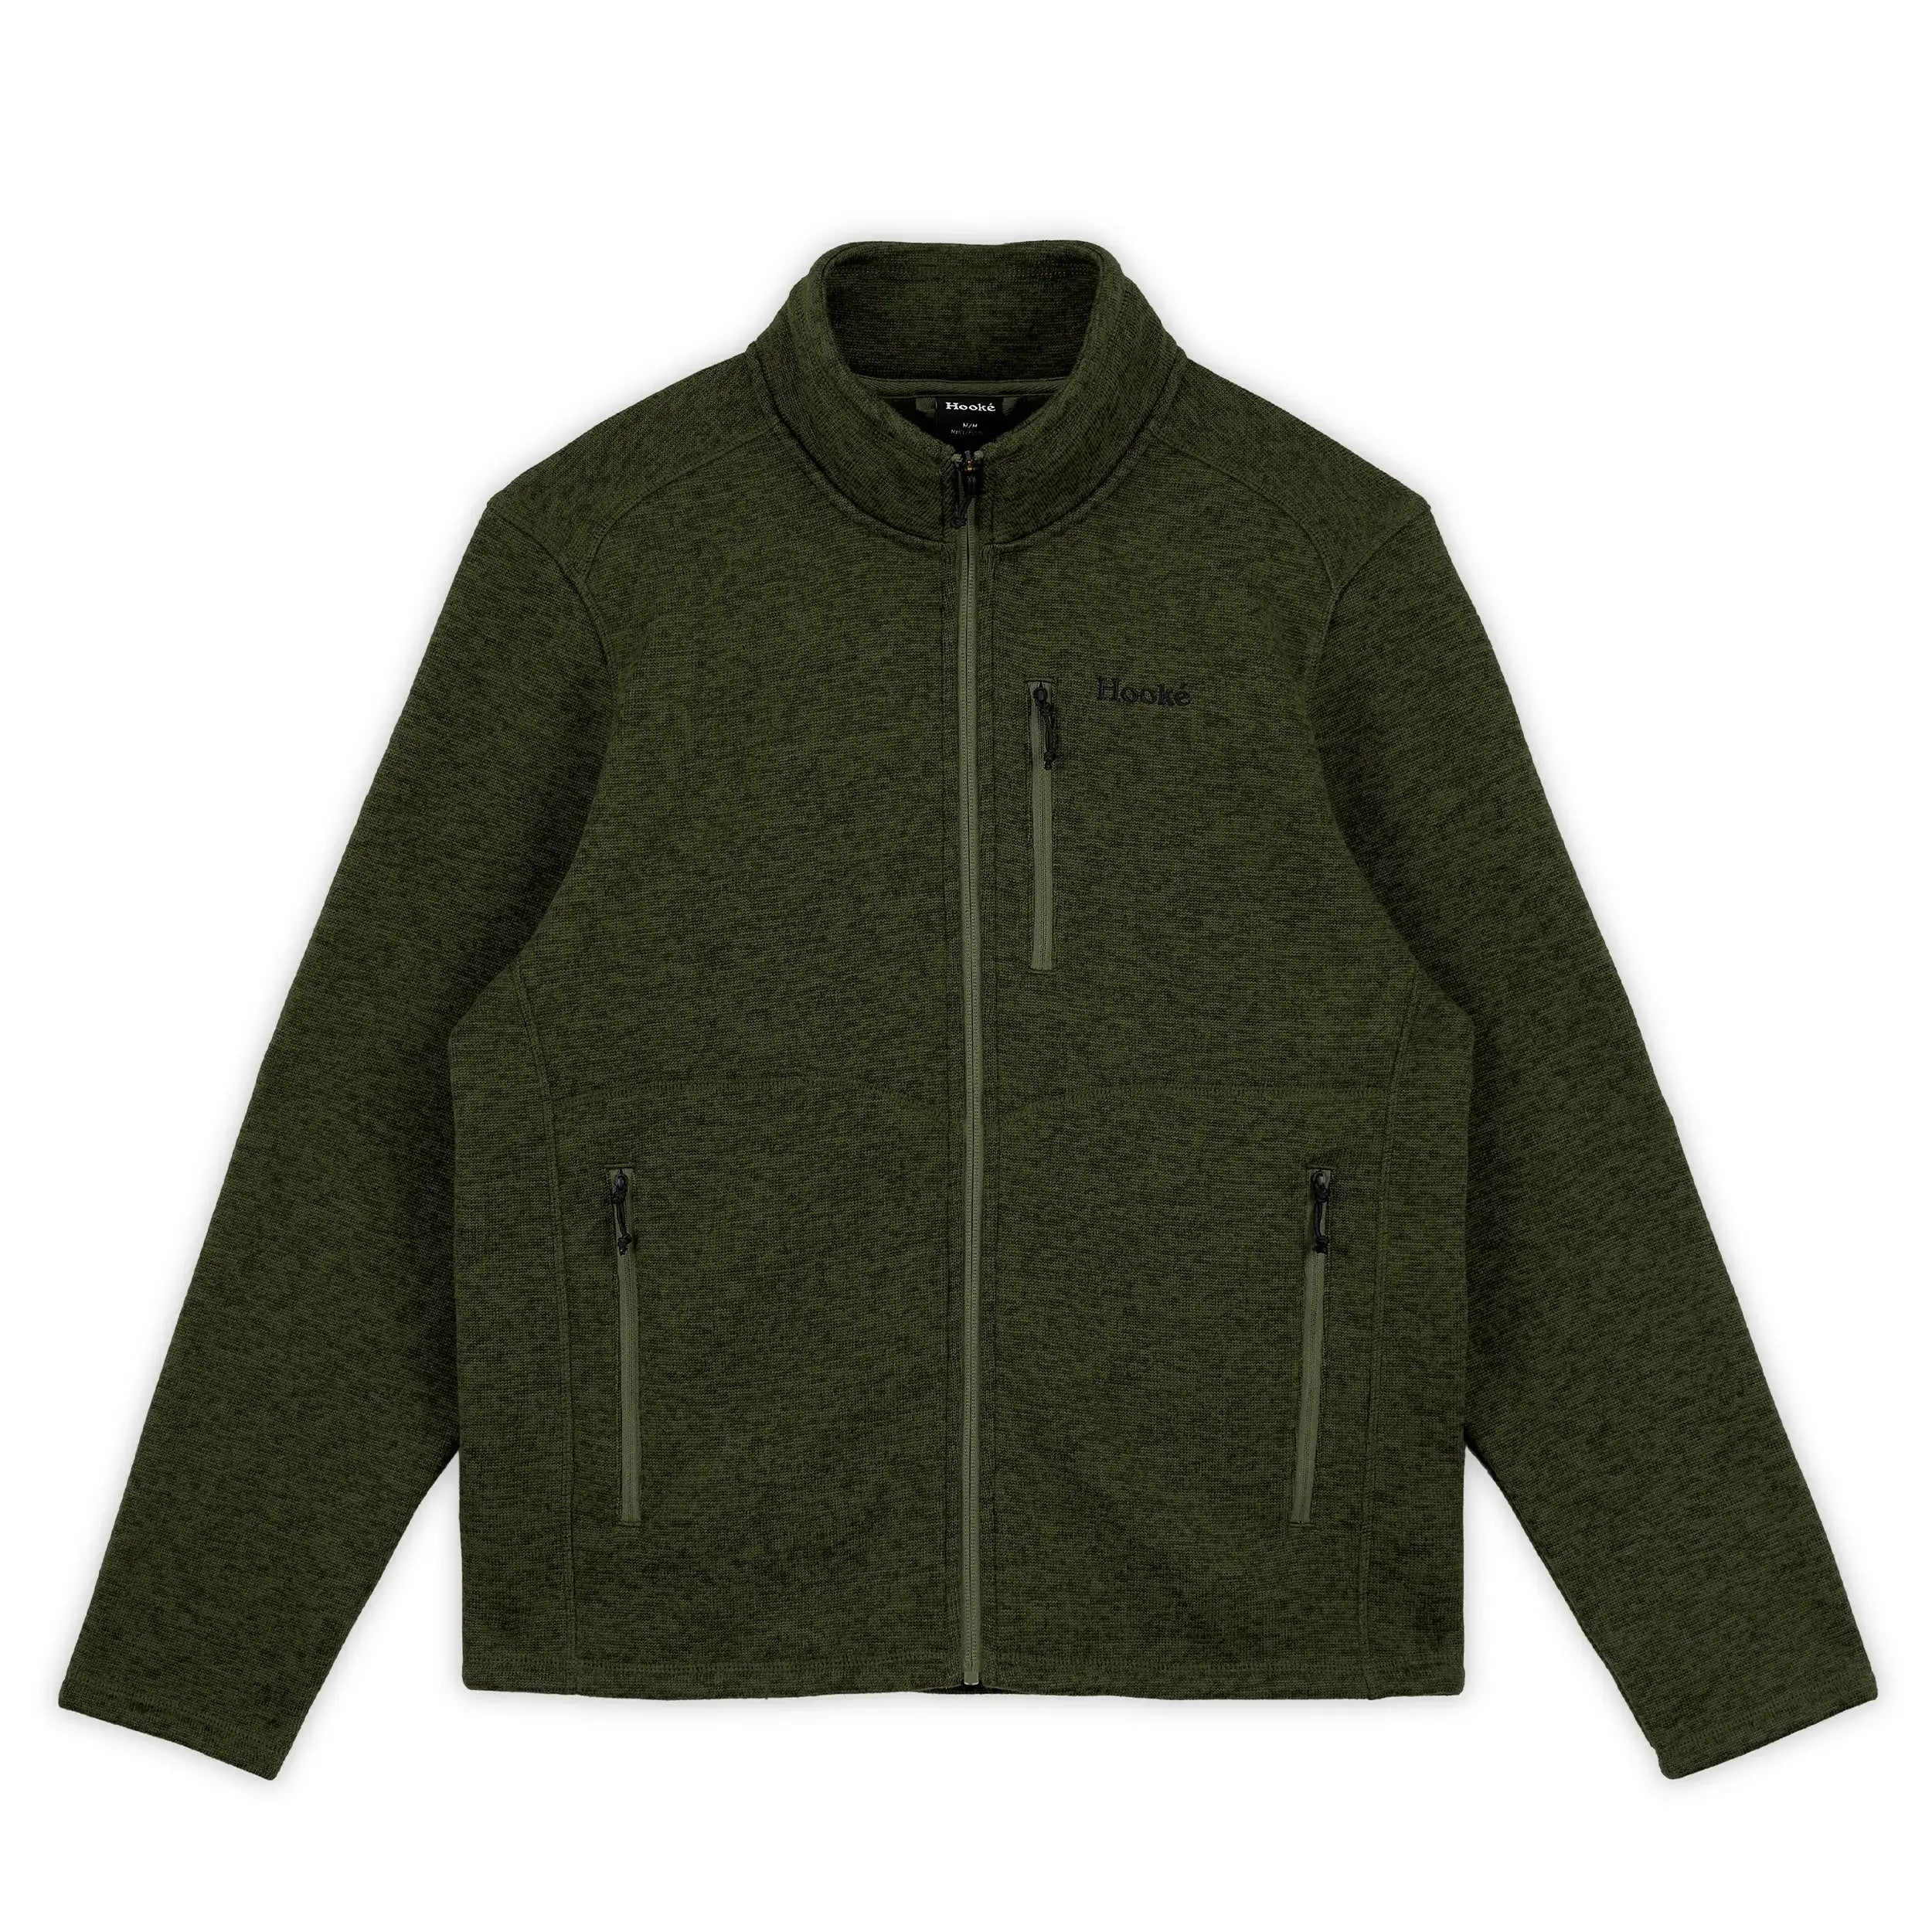 Hooké Full-Zip Sweater Fleece - Men's XL Rifle Green